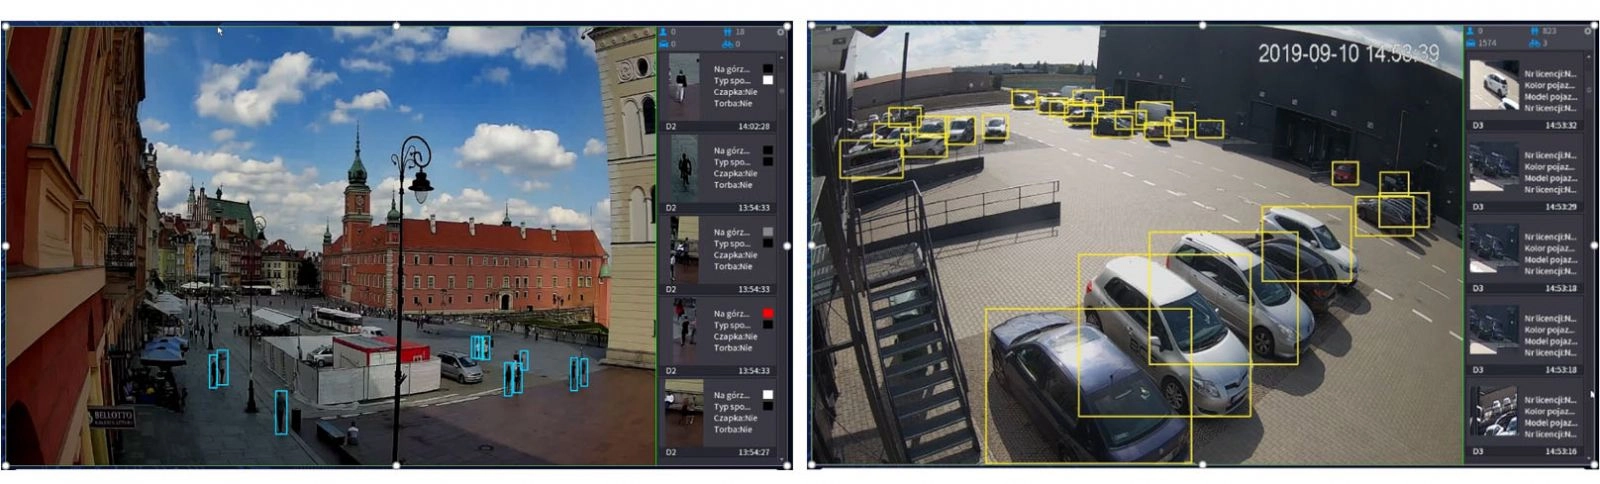 Kamery z funkcją inteligentnej analizy real-time (metadane)